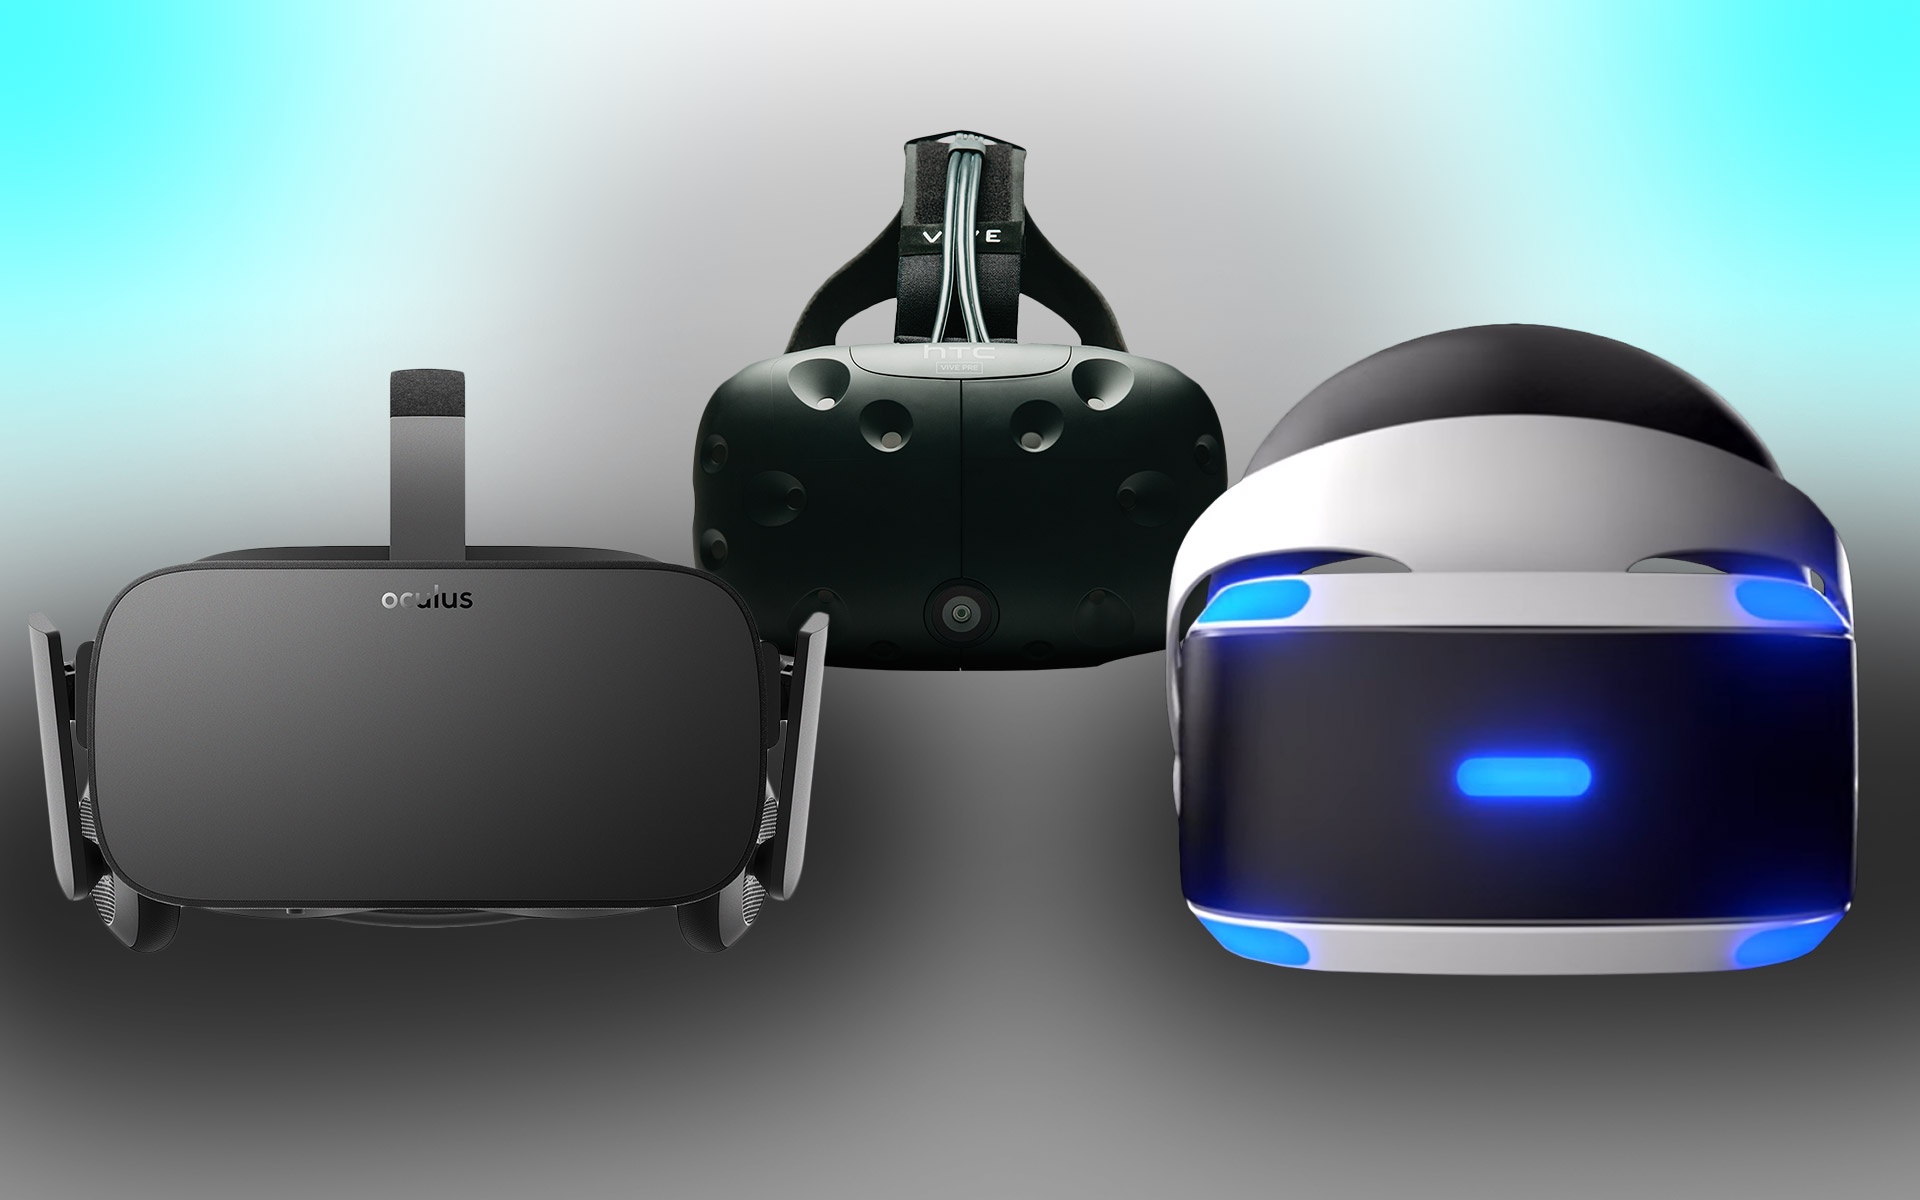 Entre os equipamentos voltados aos games, o PlayStation VR assumiu a liderança em vendas.